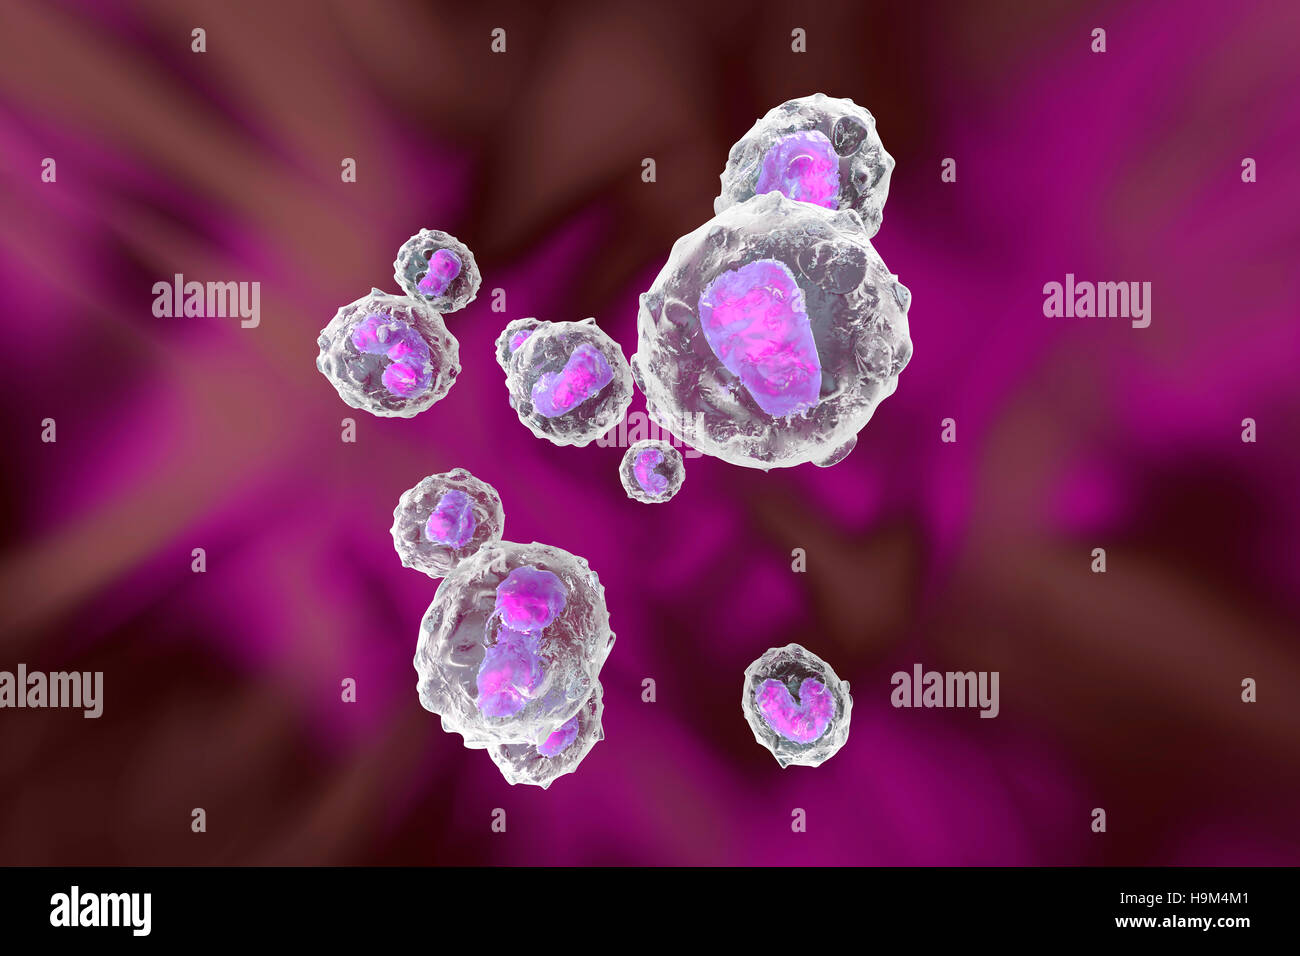 Monocitos células de defensa del sistema inmunológico, 3D Rendering Foto de stock